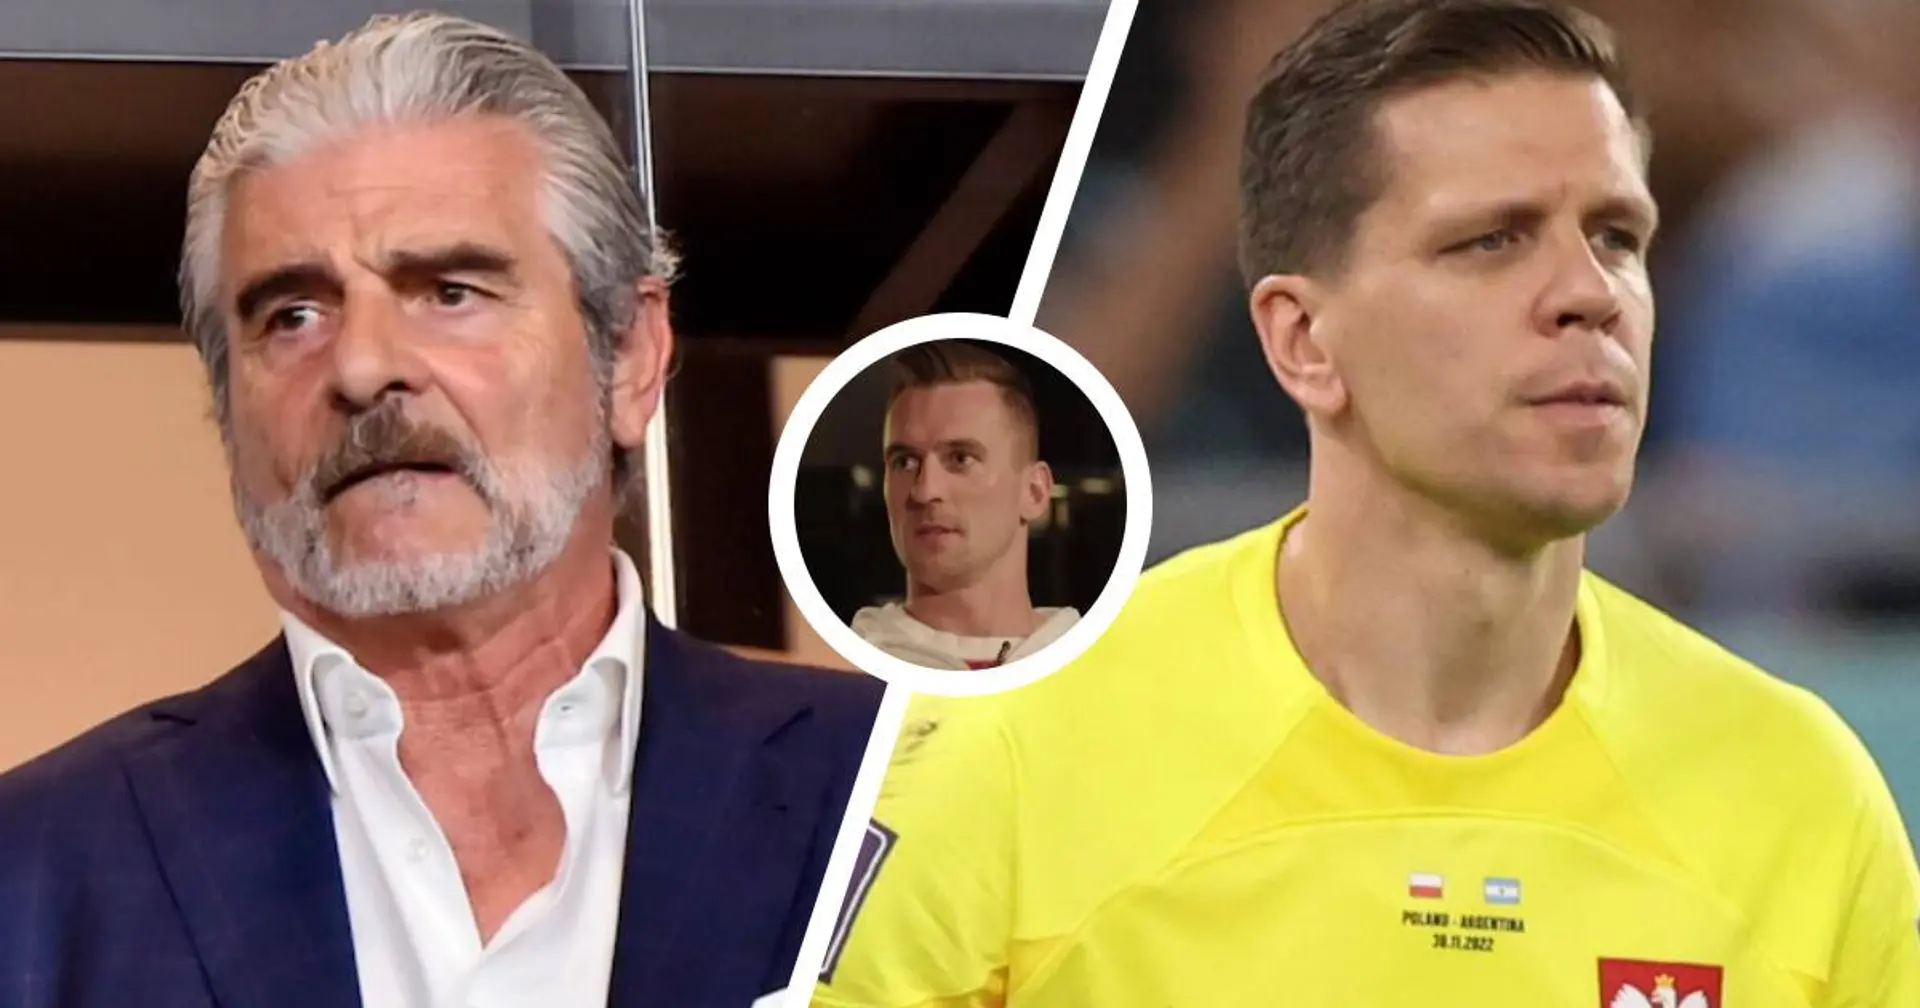 Milik elogia Szczesny e manda un messaggio alla dirigenza della Juve sul suo futuro